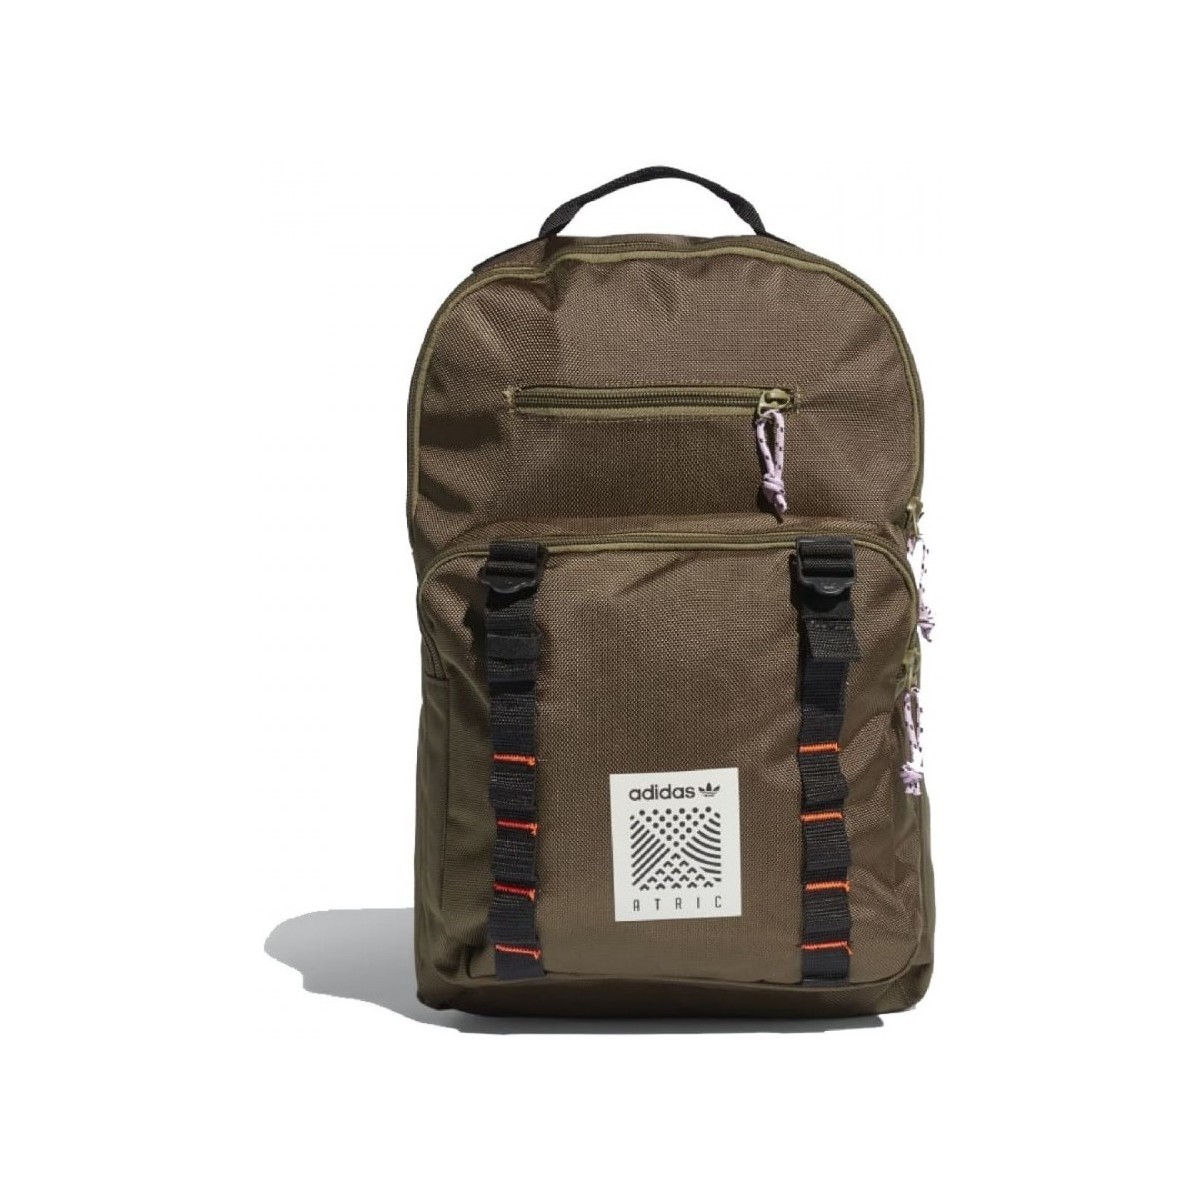 adidas Originals Atric Backpack Small 25182626 1200 A